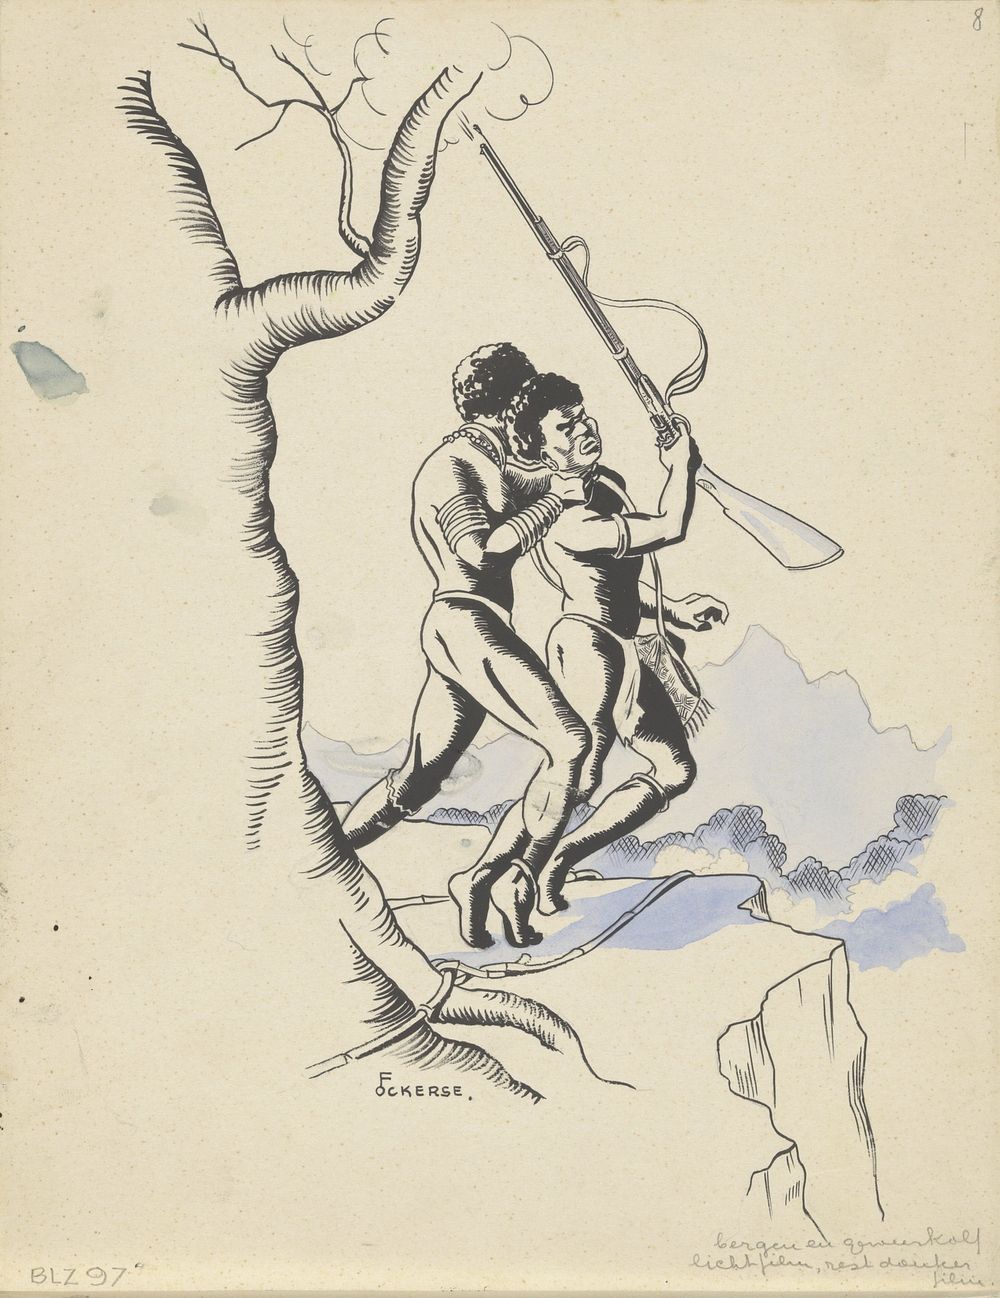 Man wurgt een jager met vuurwapen (in or before 1936) by F Ockerse